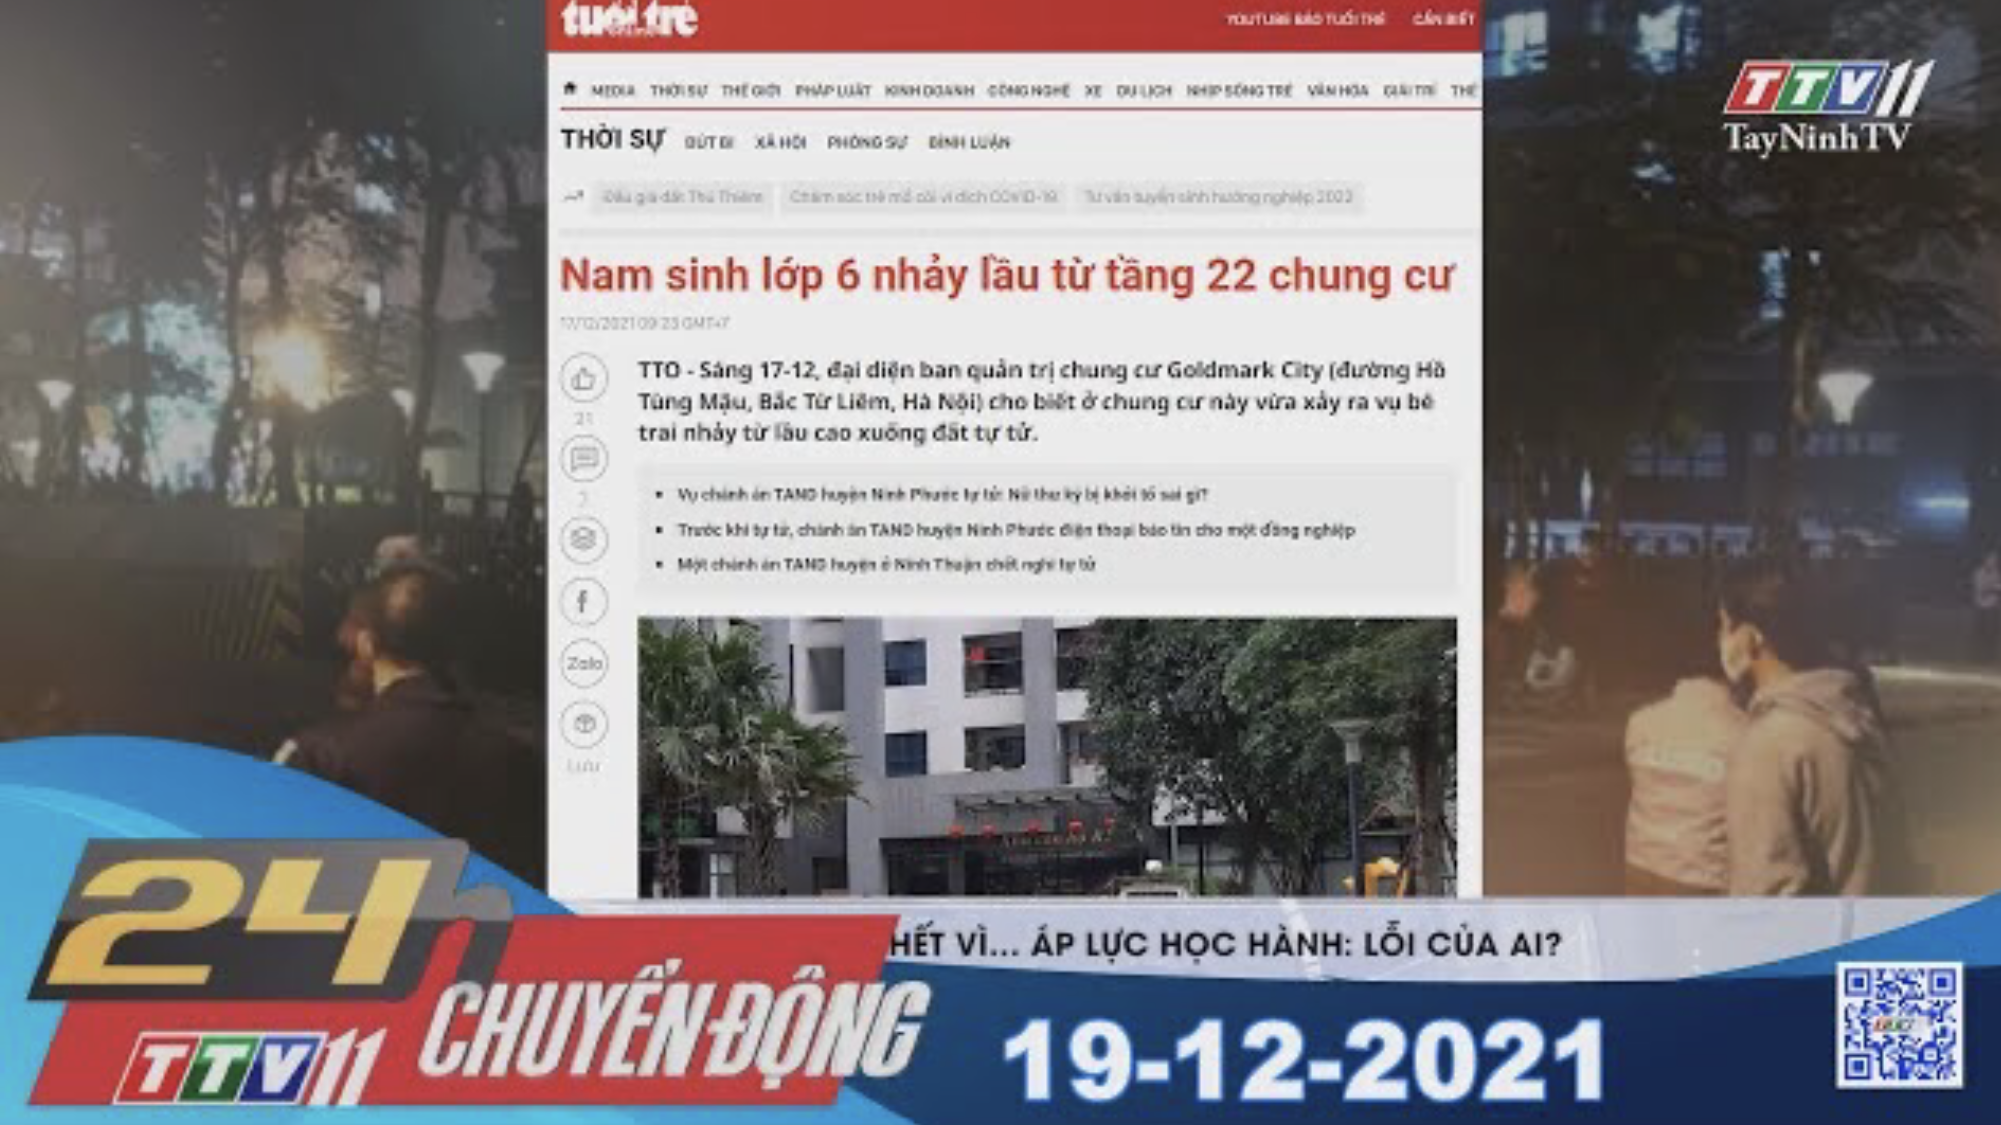 24H CHUYỂN ĐỘNG 19/12/2021 | Tin tức hôm nay | TayNinhTV